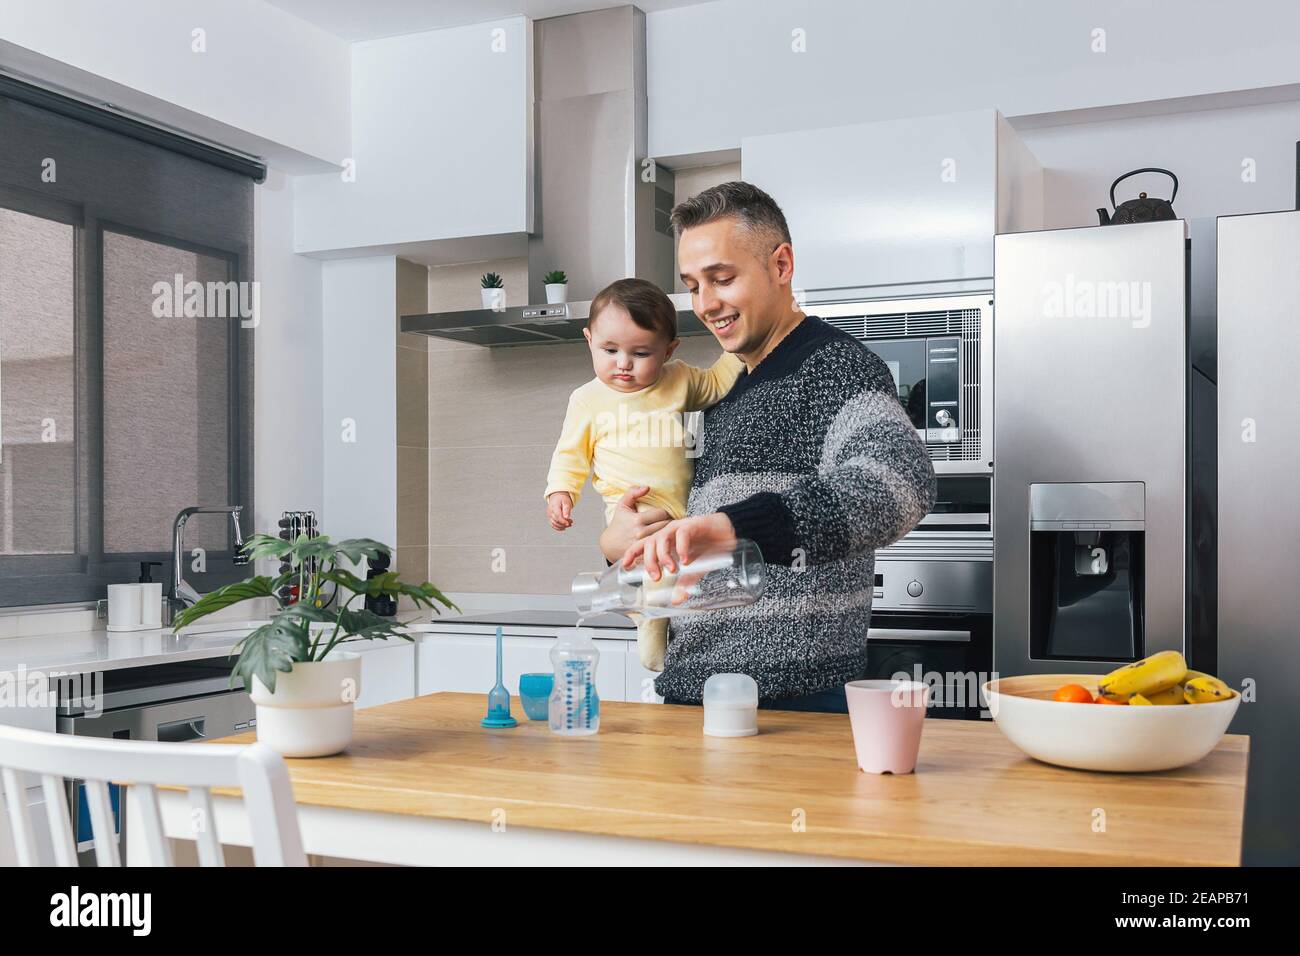 Photo de la maison du jeune père seul préparant un biberon tout en tenant son bébé dans les bras dans la cuisine. L'homme et l'enfant, paternité parentale réelle Banque D'Images